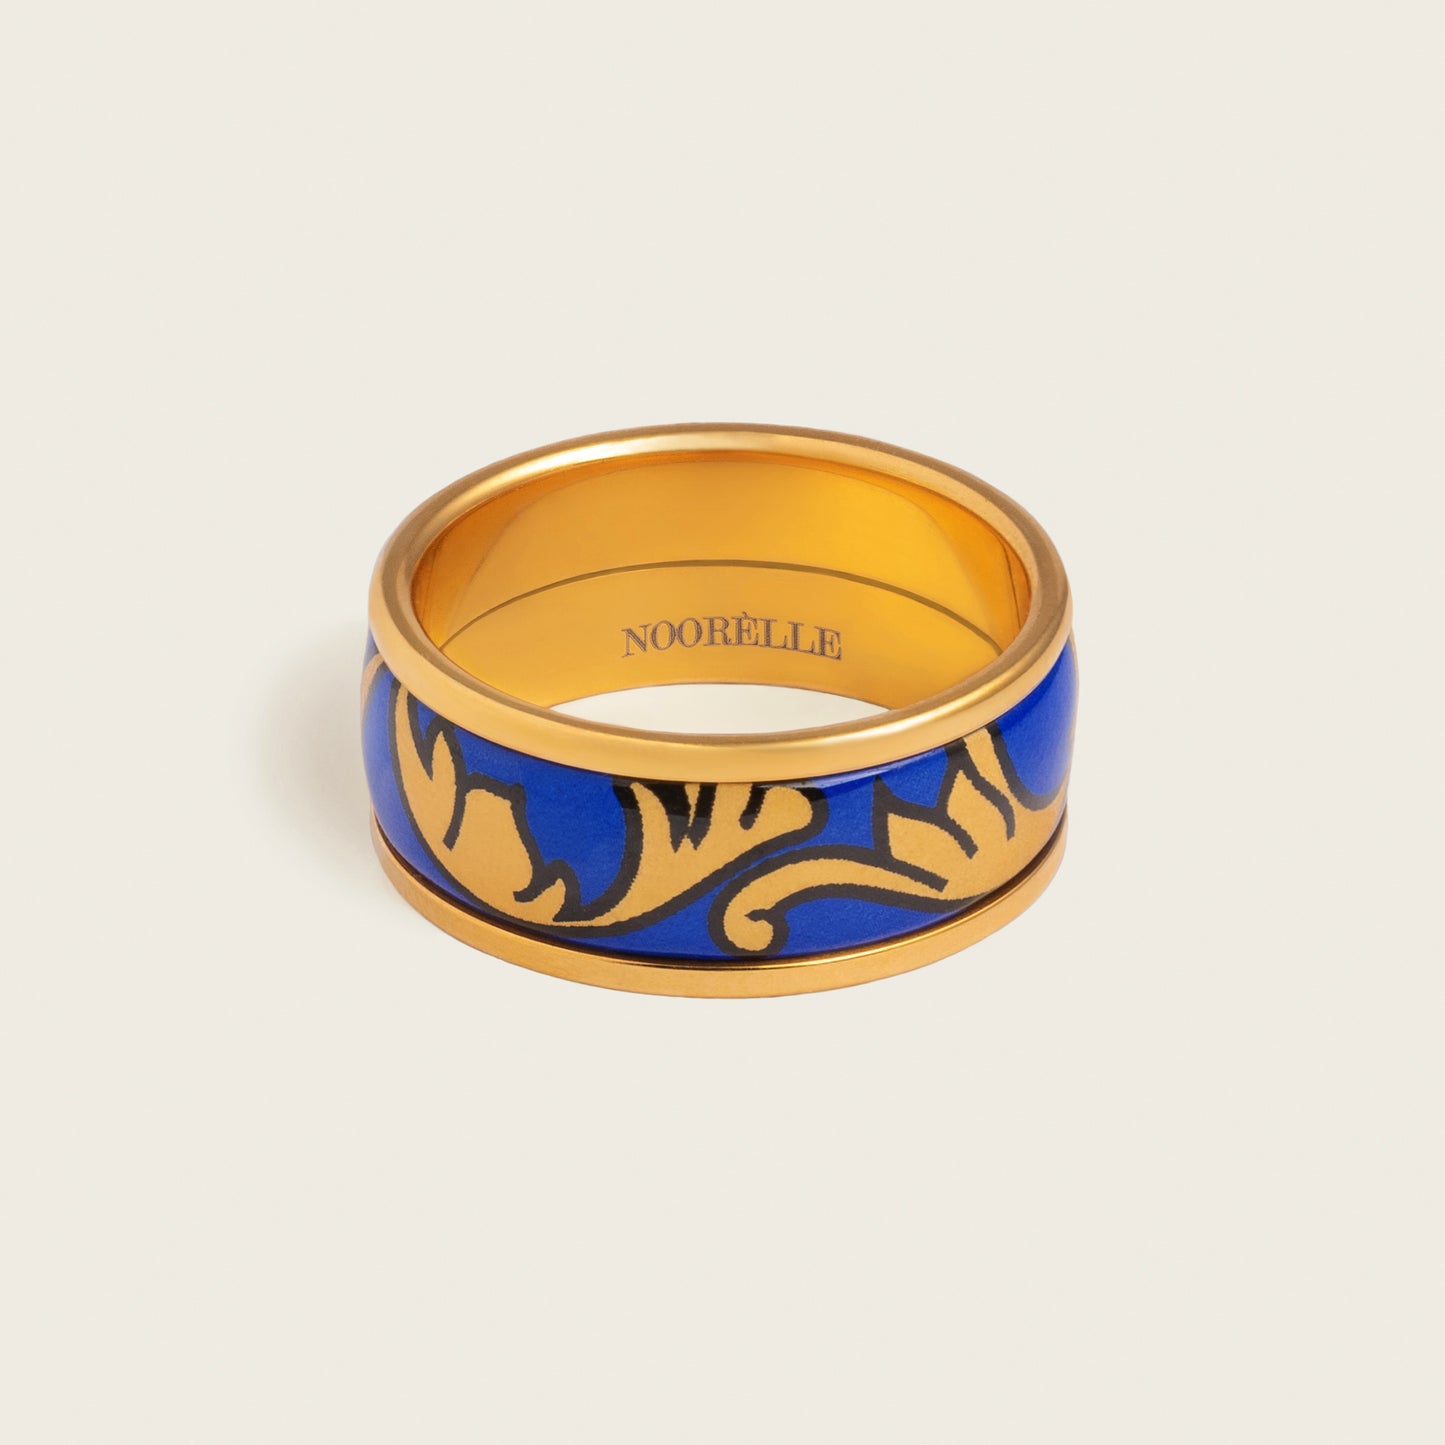 noorelle, elle ring, rings, jewellery, blue gold printed rings, rings for girl